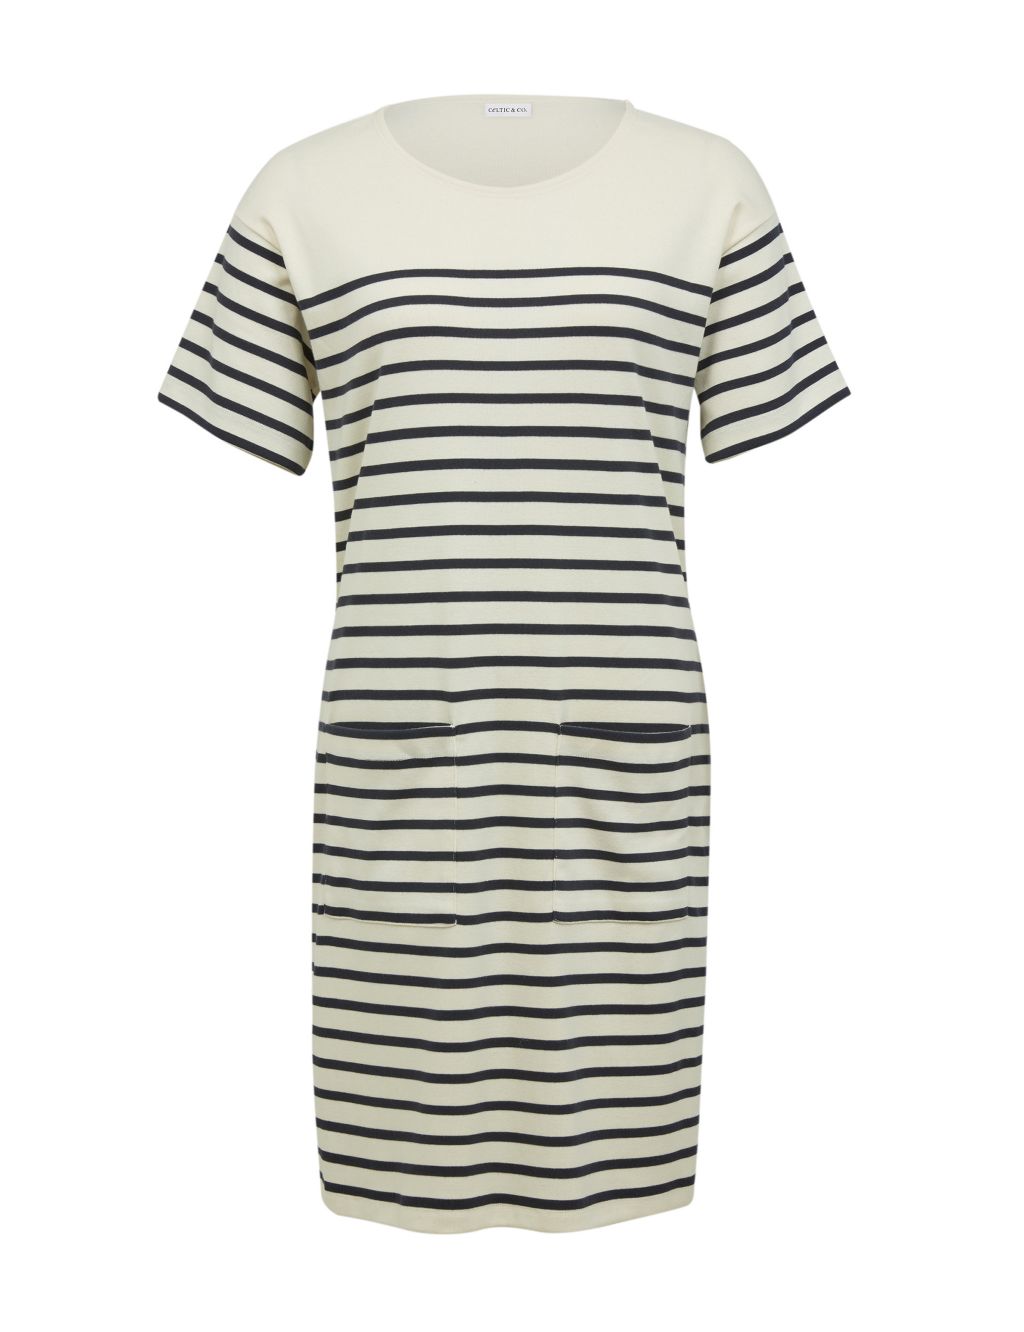 Jersey Striped Knee Length T-Shirt Dress 1 of 7